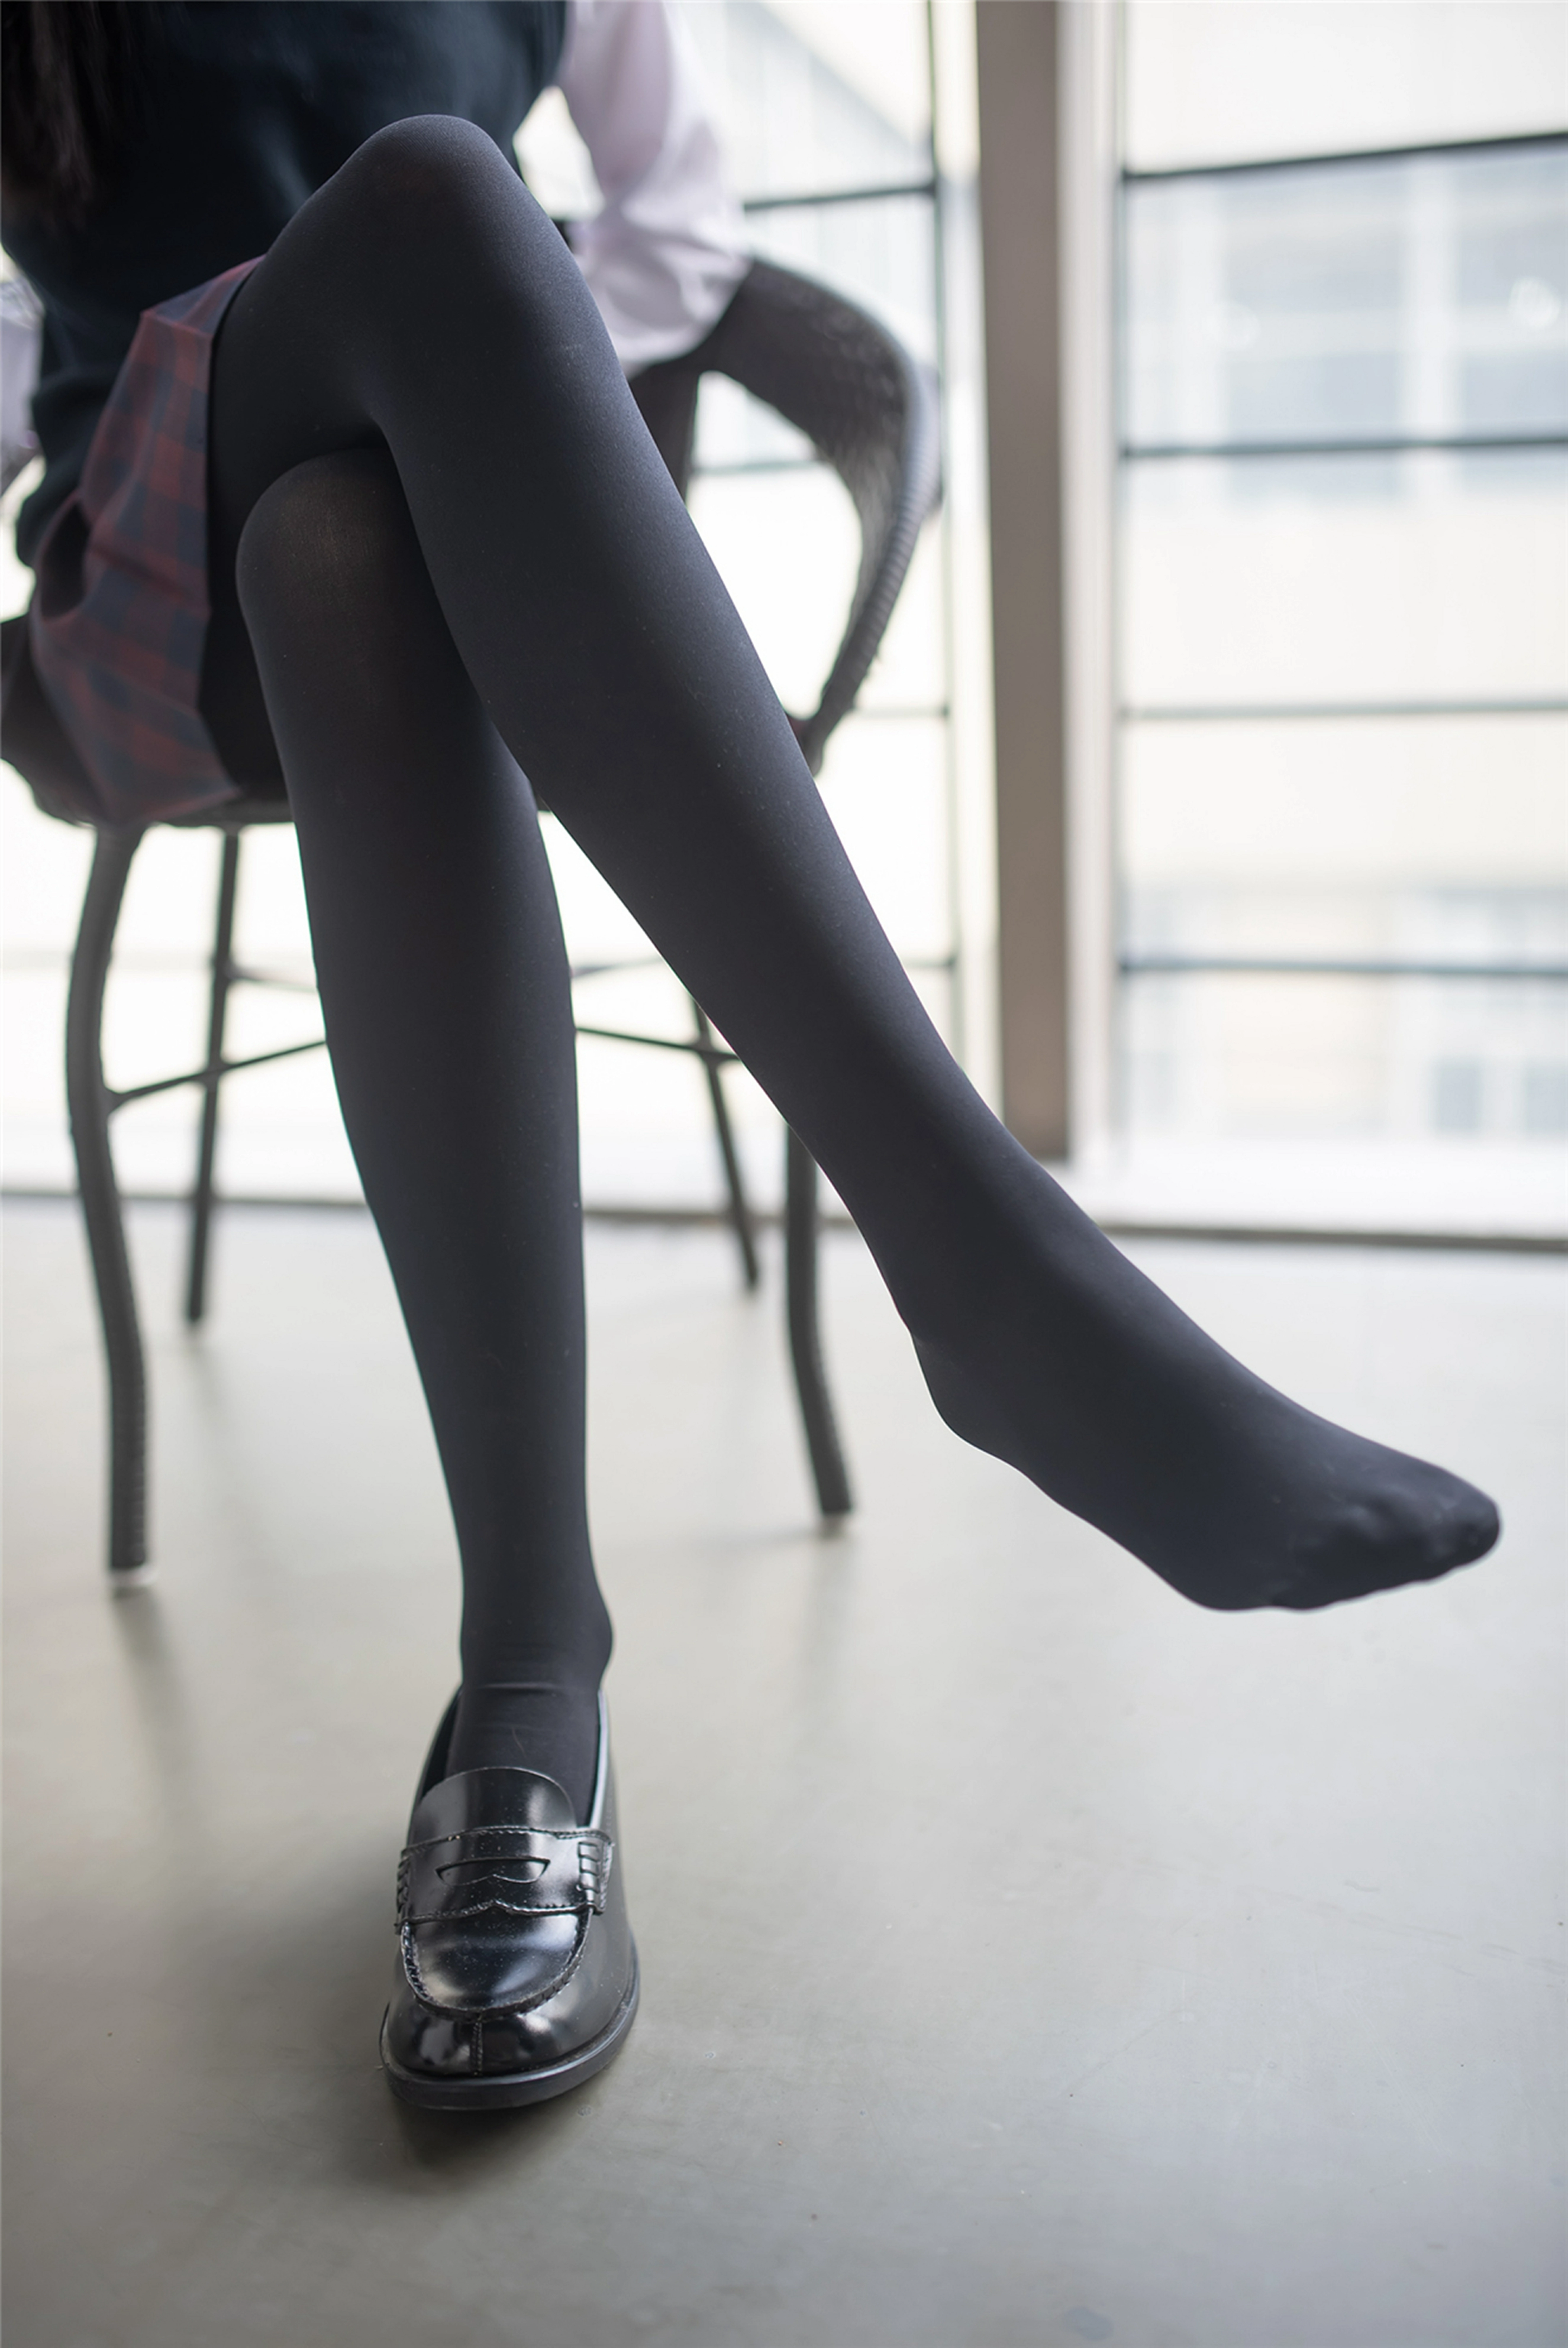 [风之领域]NO.192 学校走廊上的性感学妹格子短裙加黑丝美腿私房写真集,